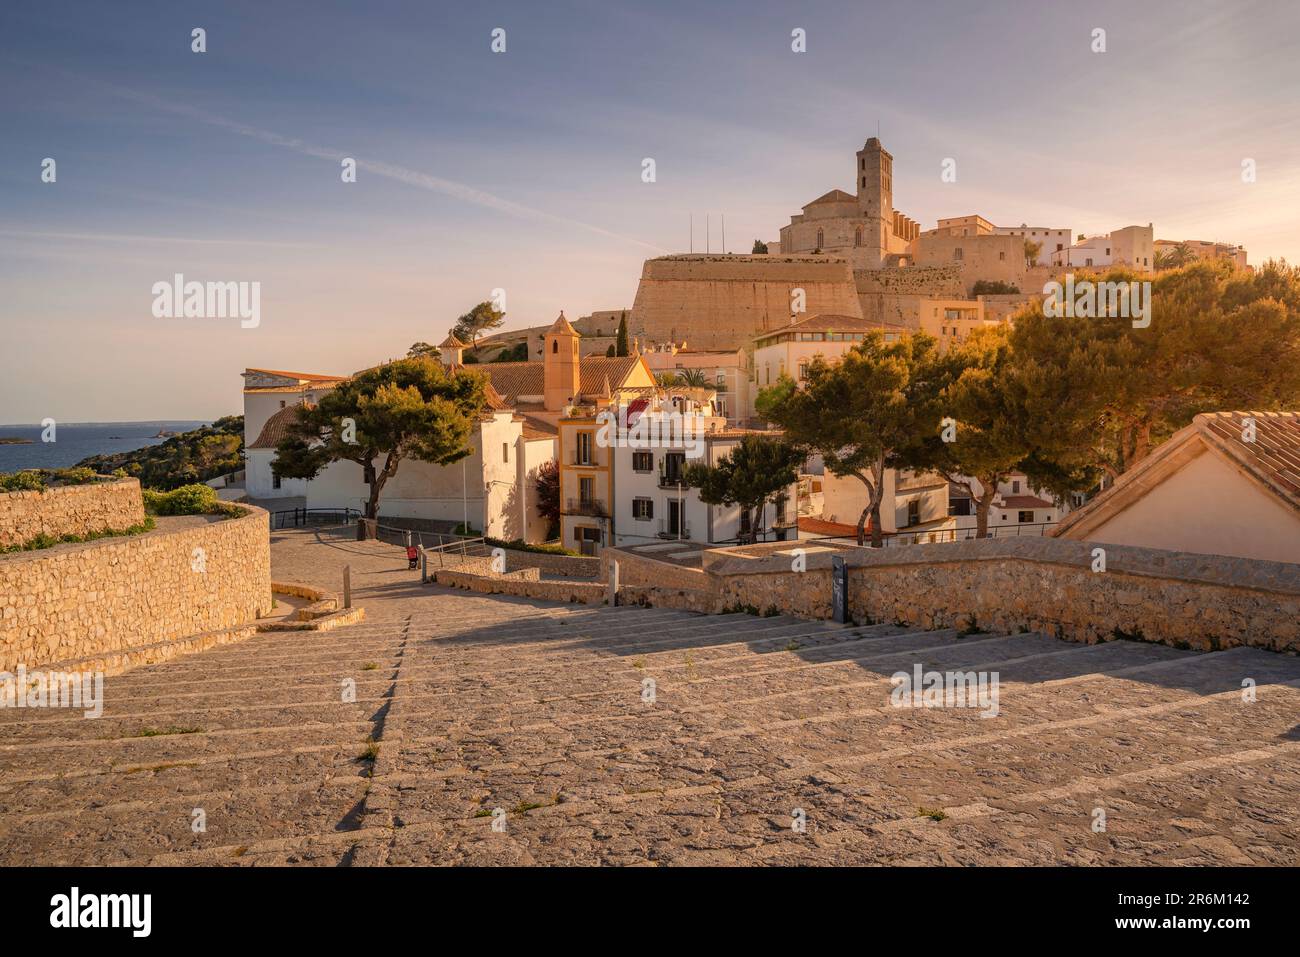 Vista di Dalt Vila e della Cattedrale, patrimonio dell'umanità dell'UNESCO, città di Ibiza, Eivissa, Isole Baleari, Spagna, Mediterraneo, Europa Foto Stock